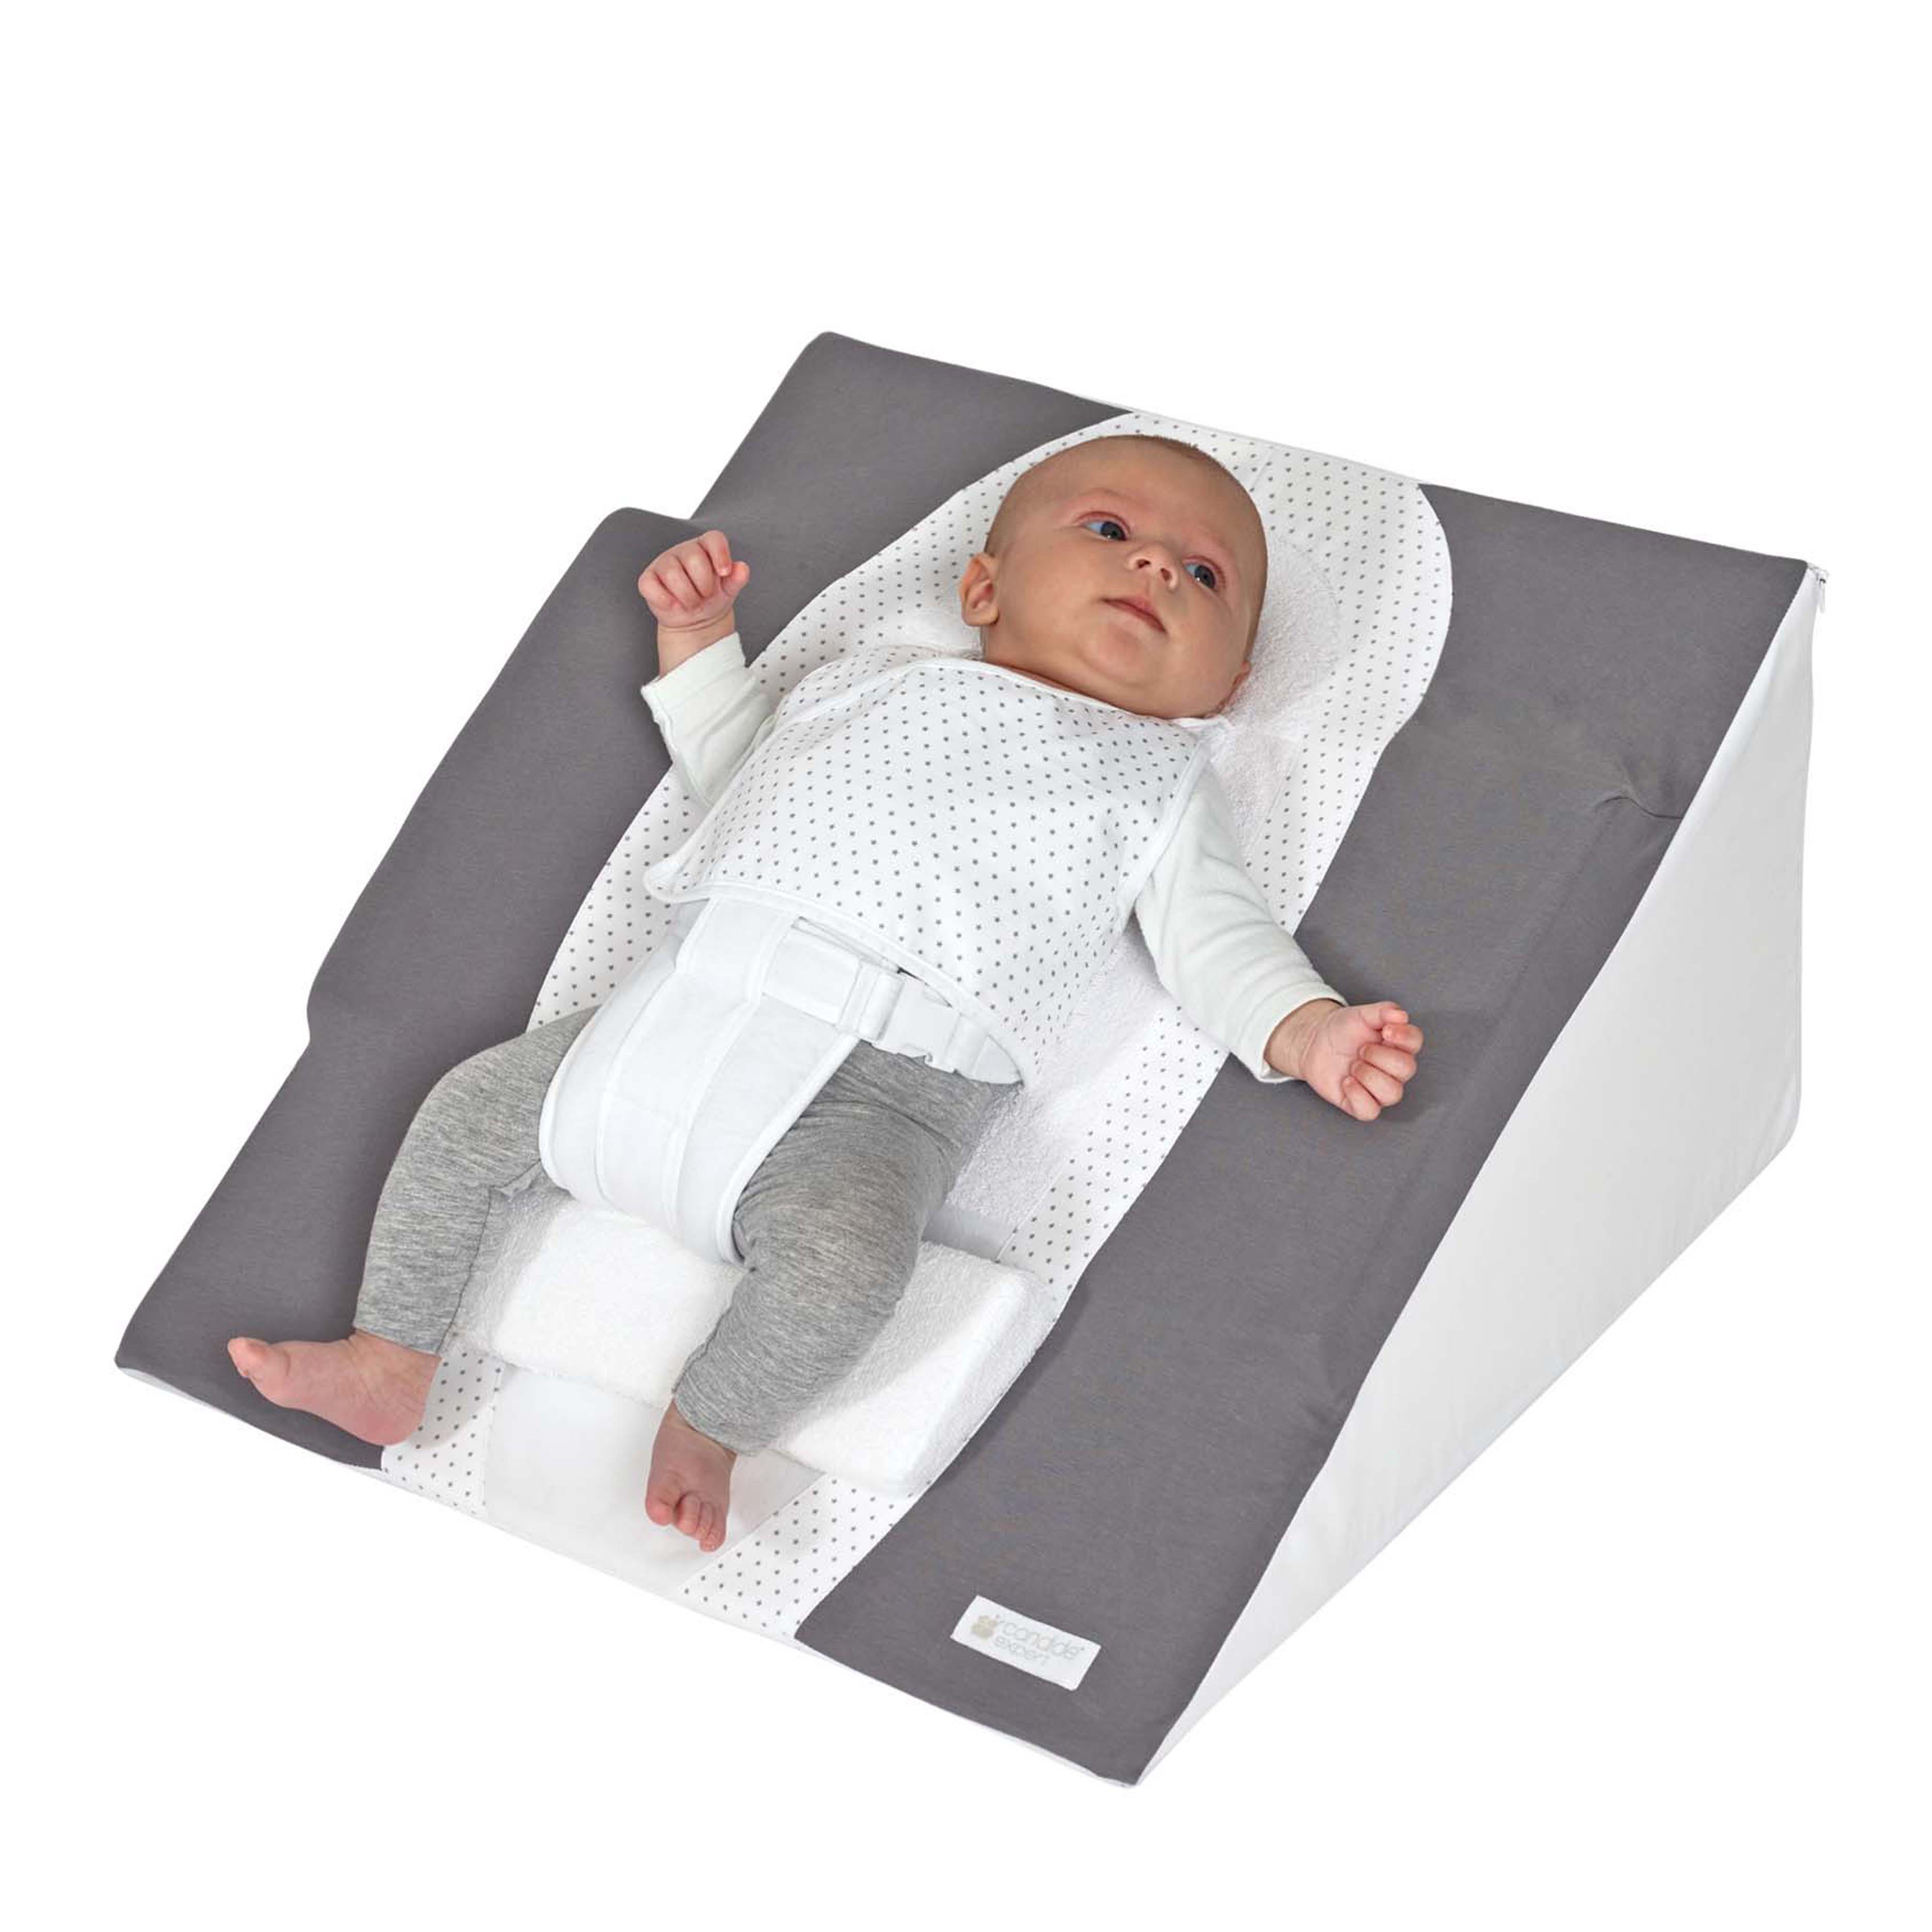 Quand et comment faire dormir son bébé sur un plan incliné ?